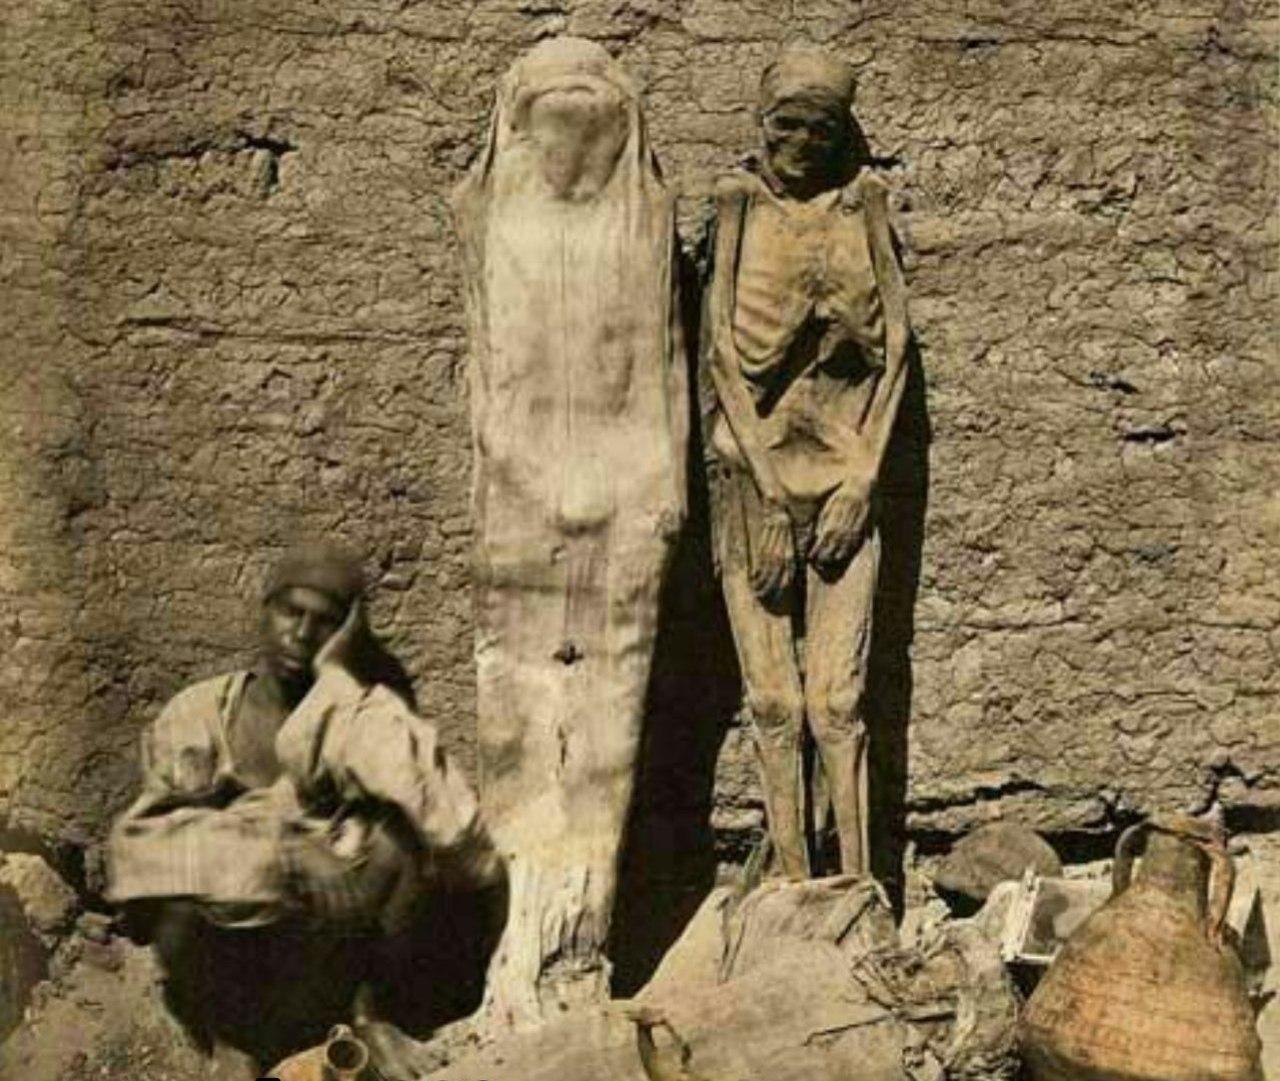 تصویری از فروش اجساد مومیایی در سال 1870 در قاهره مصر